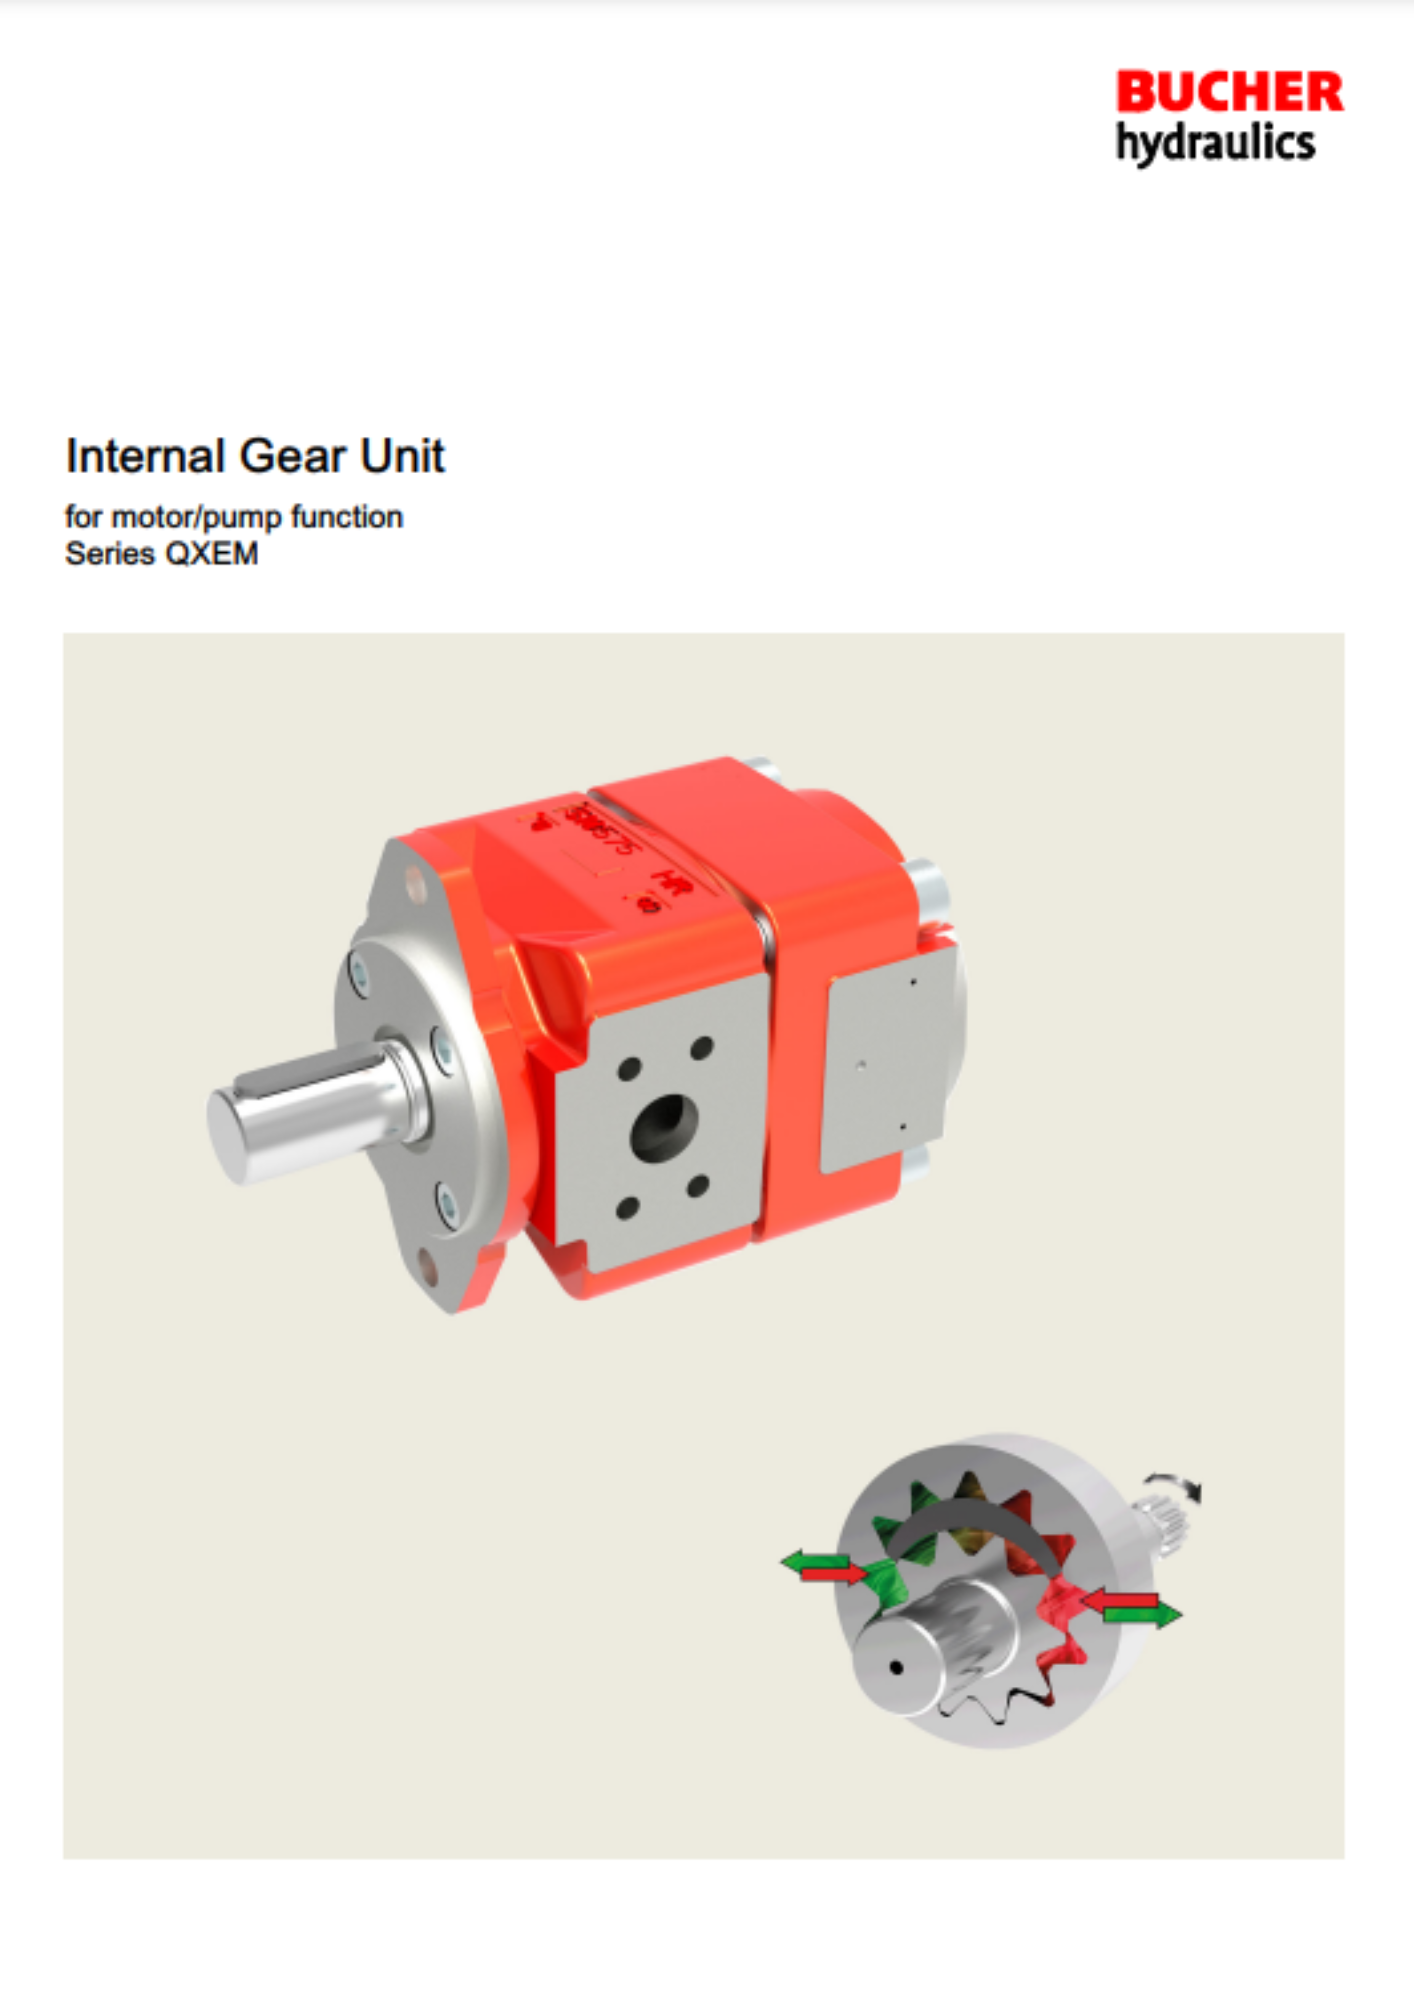 Bucher: QXEM internal gear pumps